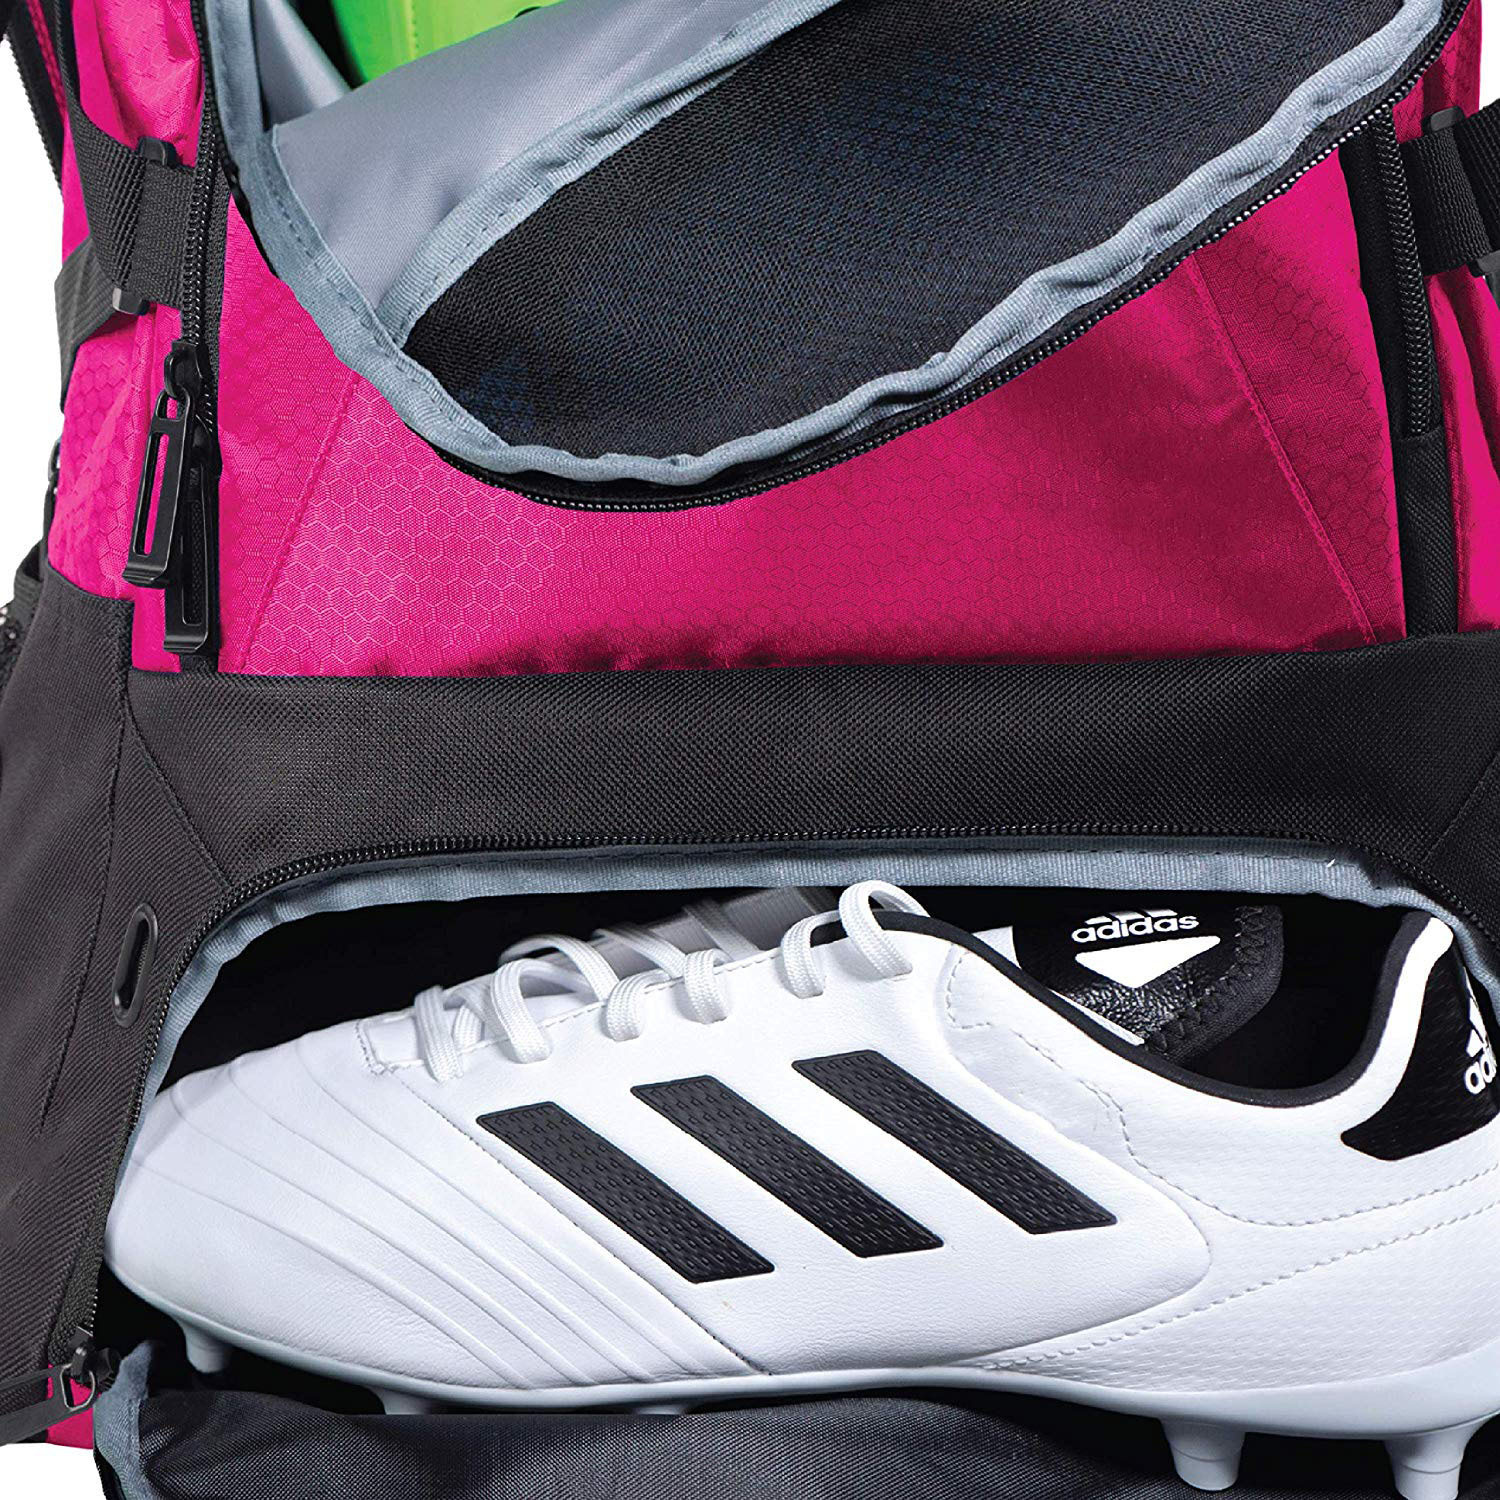 ODM/OEM多機能ウォーターレジスタンススポーツサッカーチームバッグキャリアシューズコンパートメントカスタムロゴ用バックパック